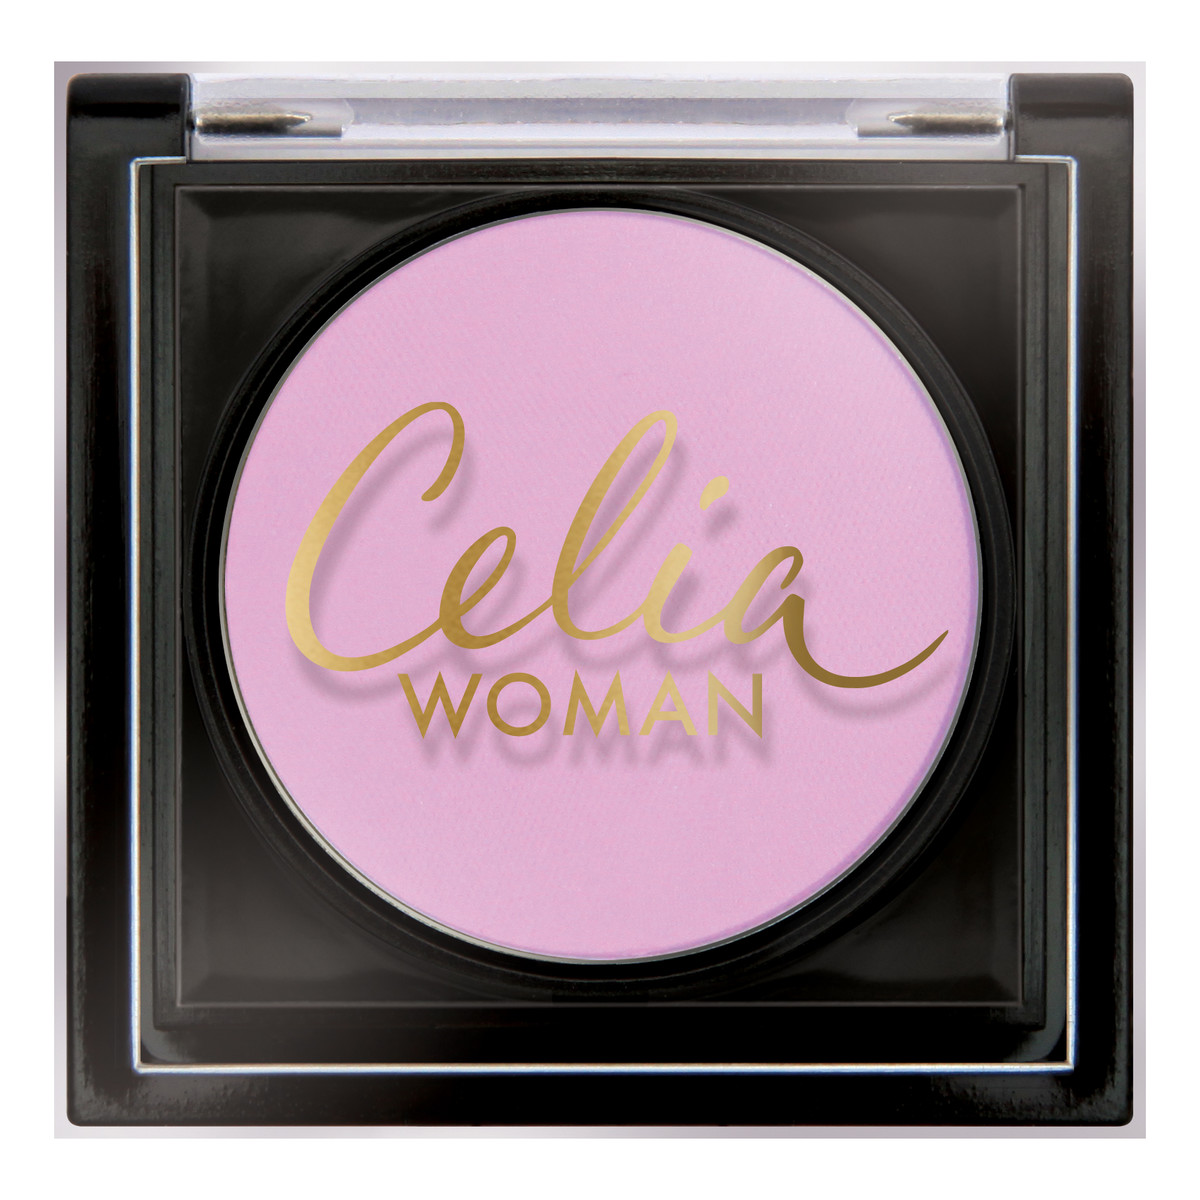 Celia Woman Cień do powiek satynowy